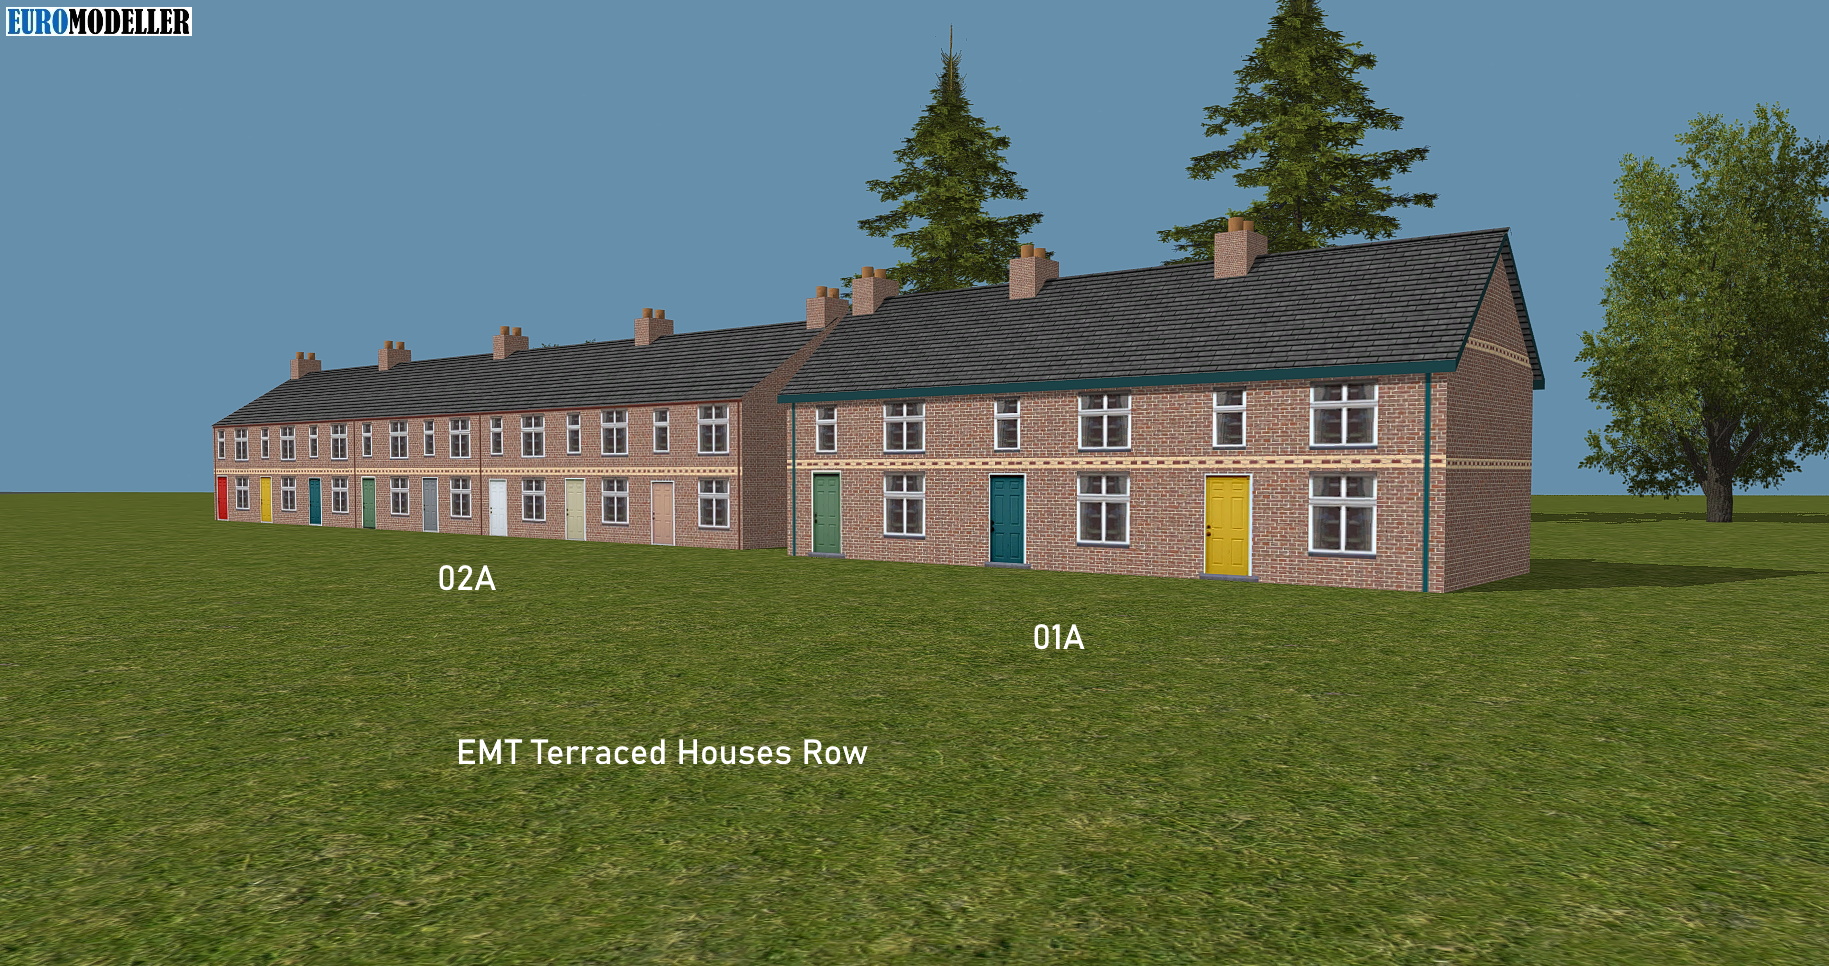 EMT Terraced Houses Row 1a, 2a